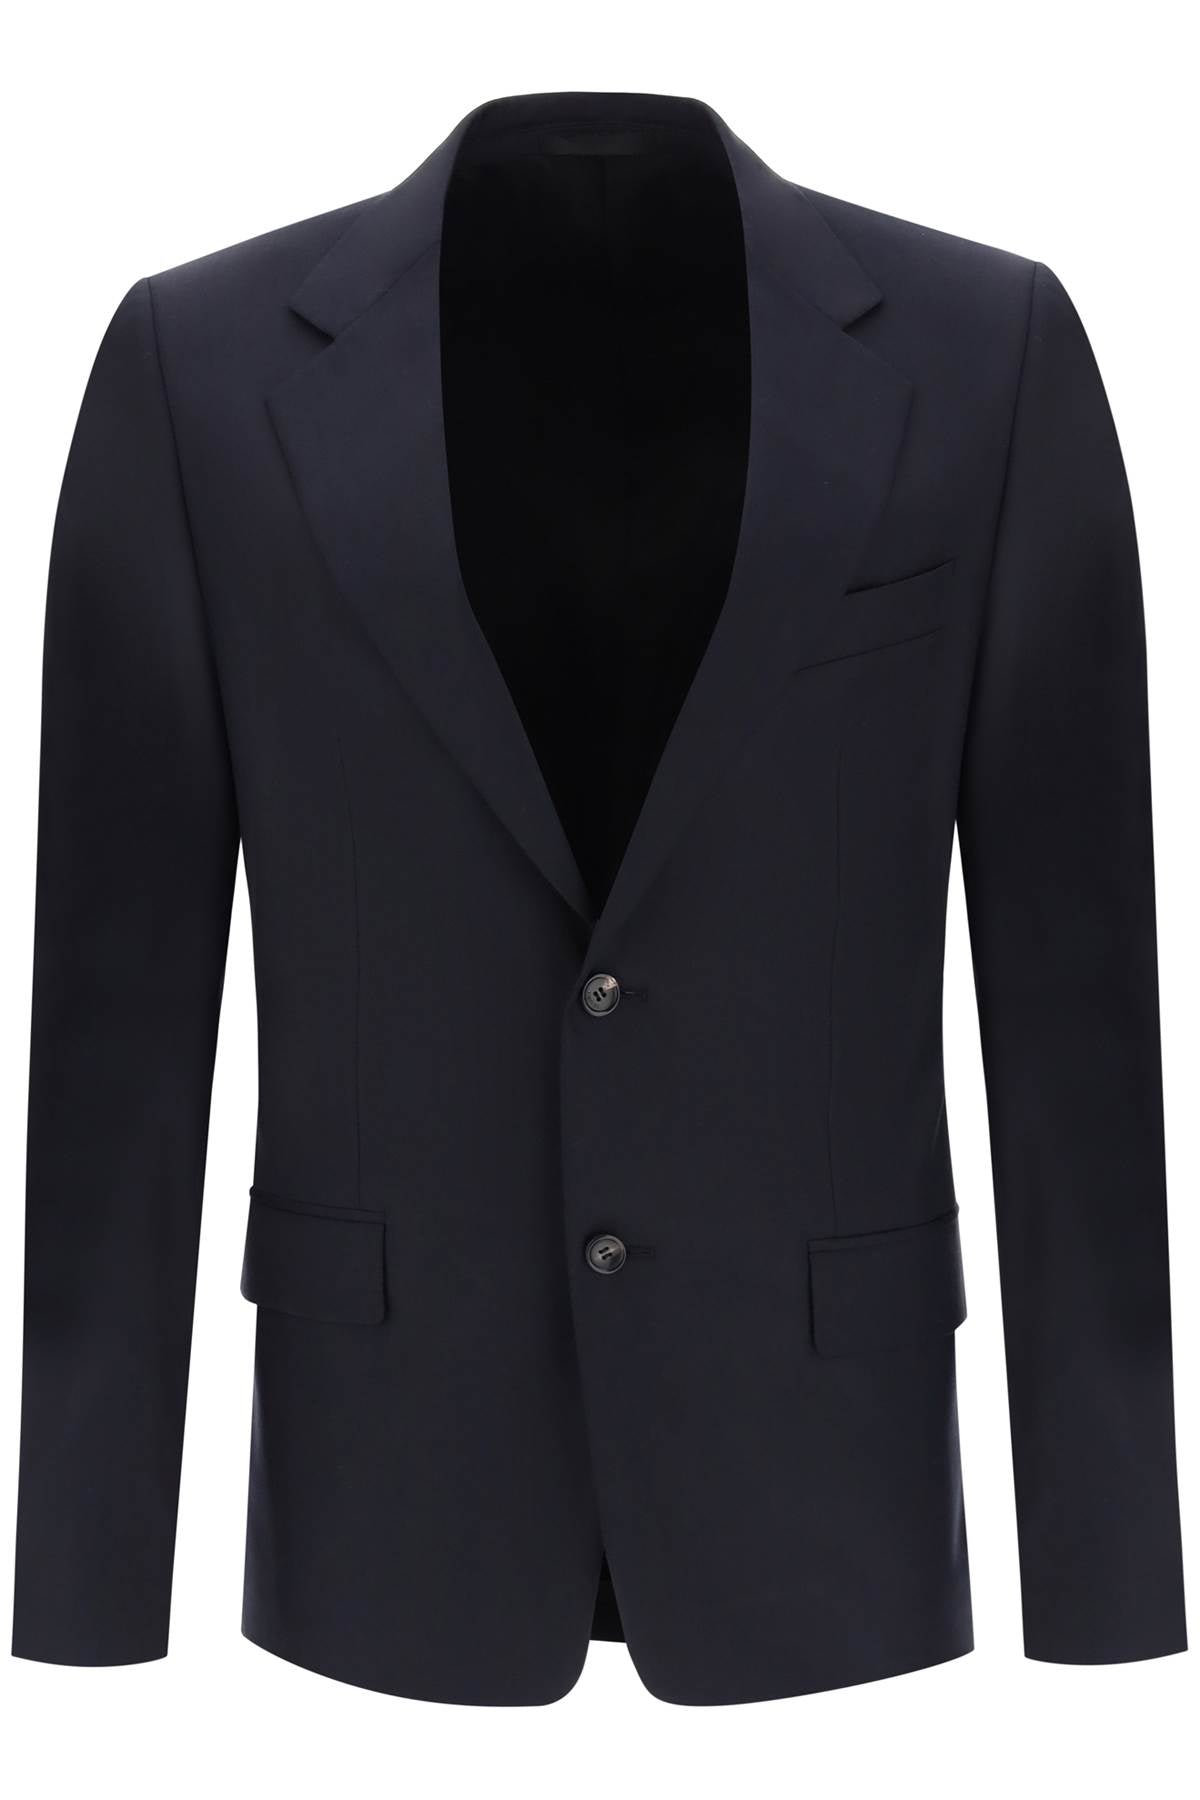 Lanvin single-breasted jacket in light wool-0